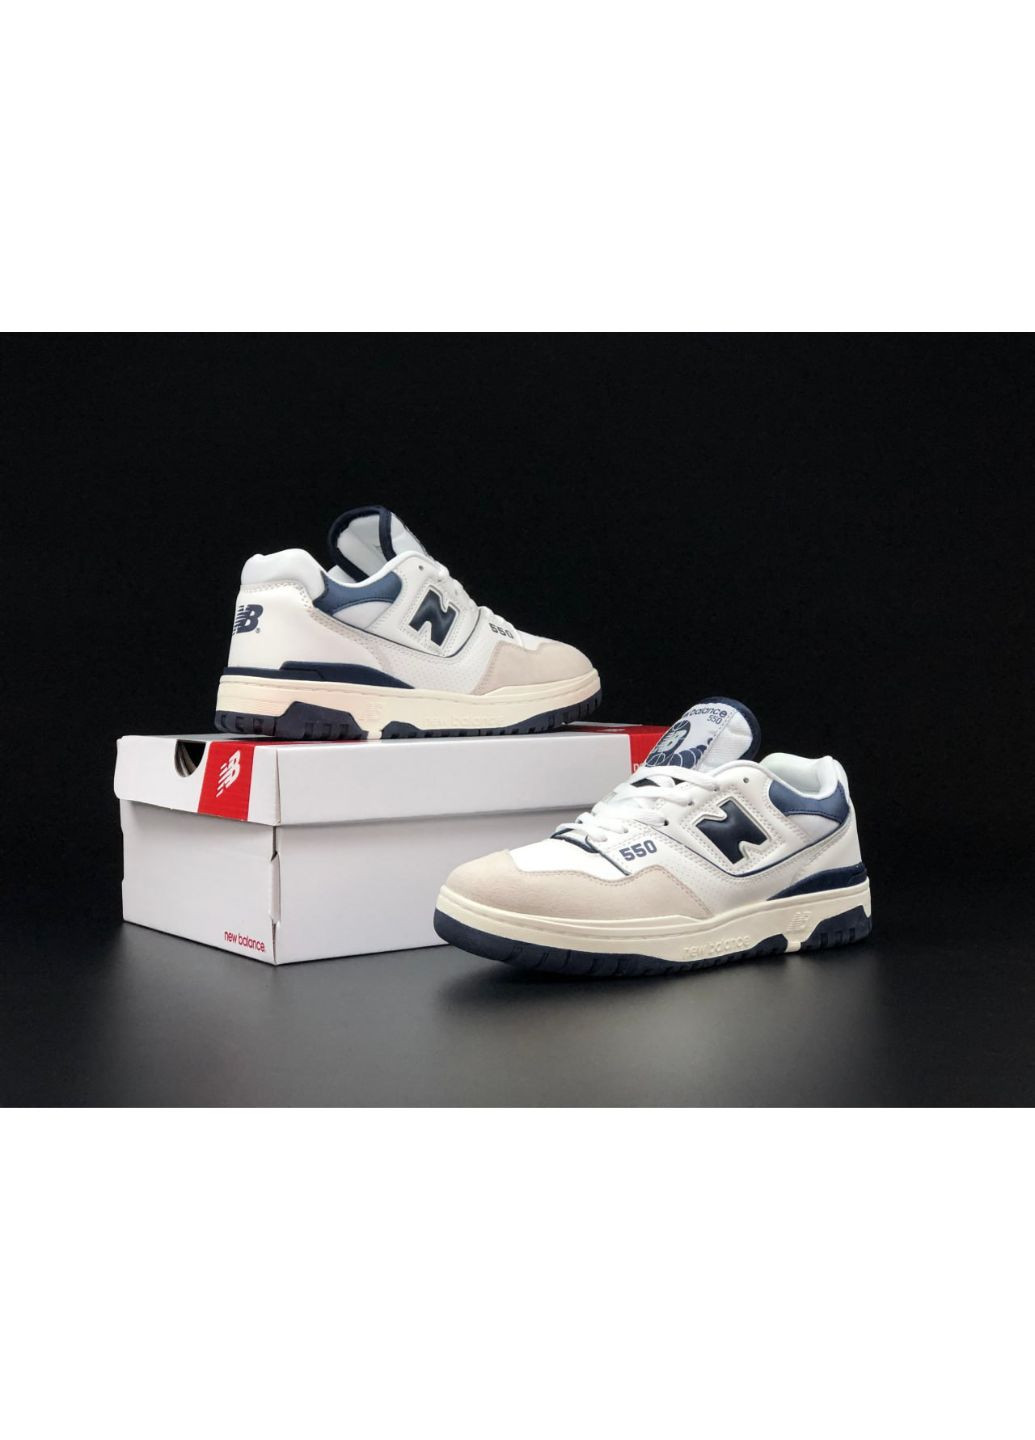 Бежевые демисезонные мужские кроссовки белые с темно синим "no name" New Balance 550